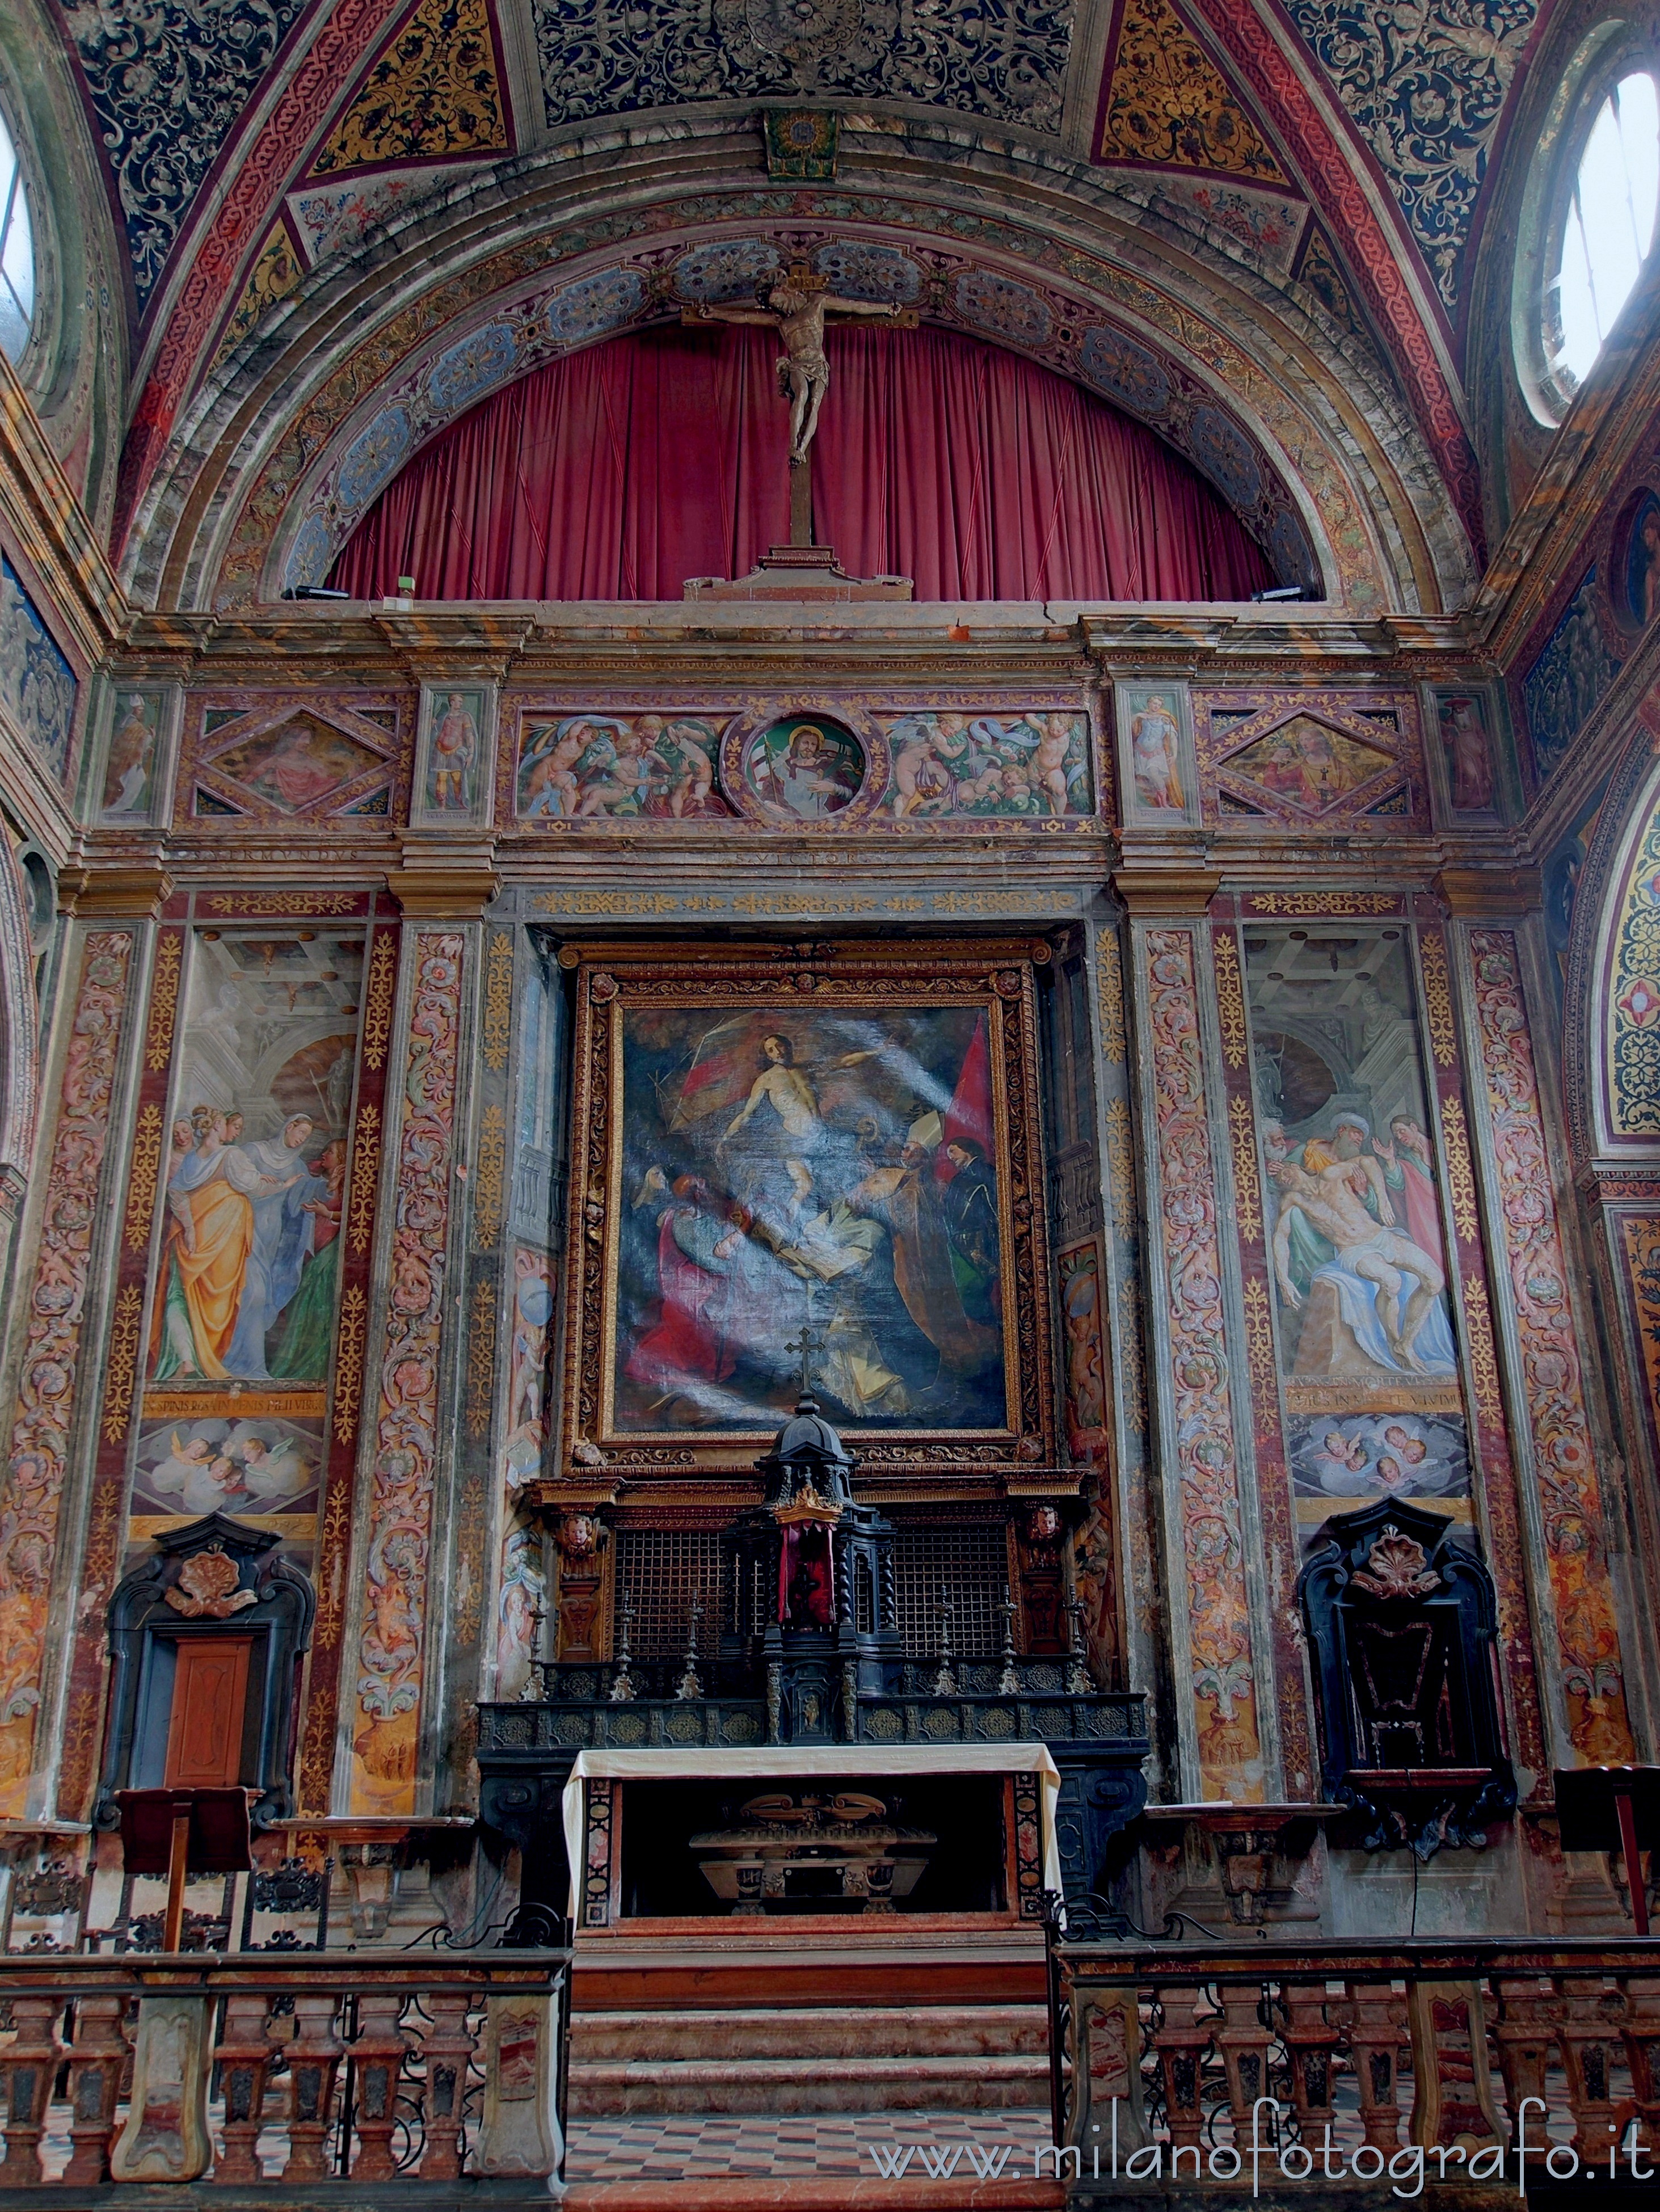 Meda (Monza e Brianza, Italy): Altar and presbytery of the Church of San Vittore - Meda (Monza e Brianza, Italy)